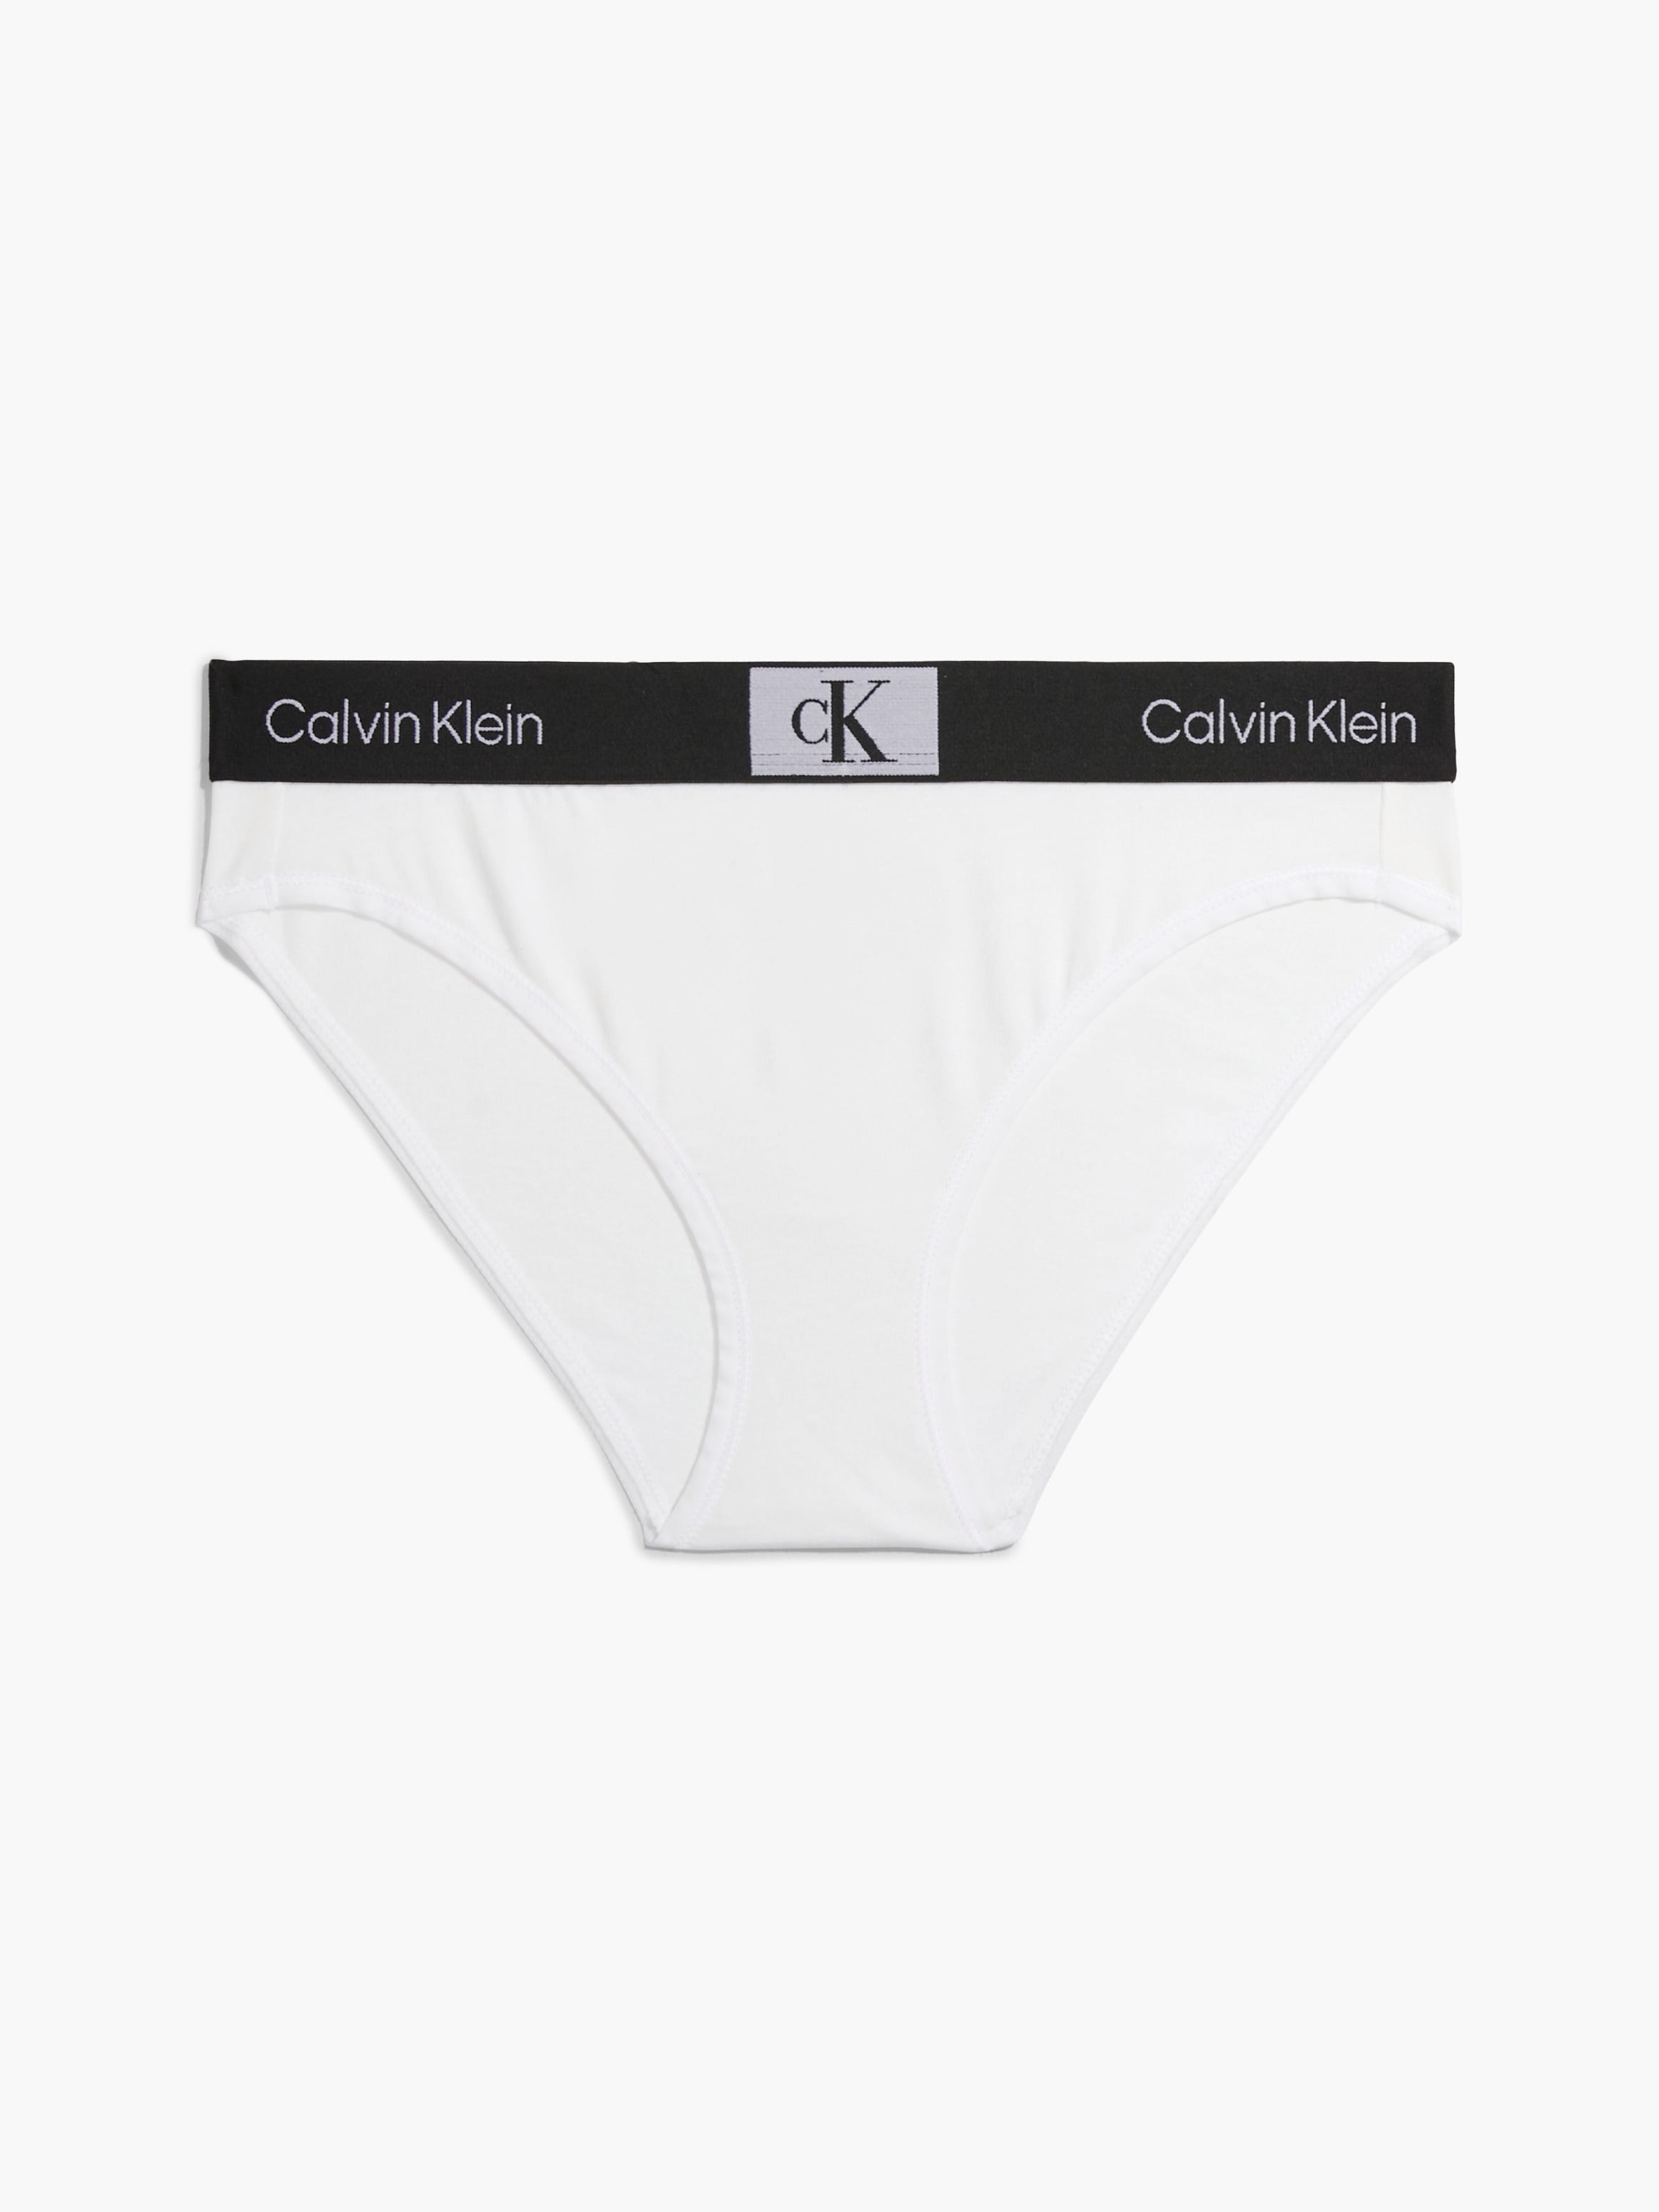 Calvin Klein Modern Bikini Style Brief In White – Mish